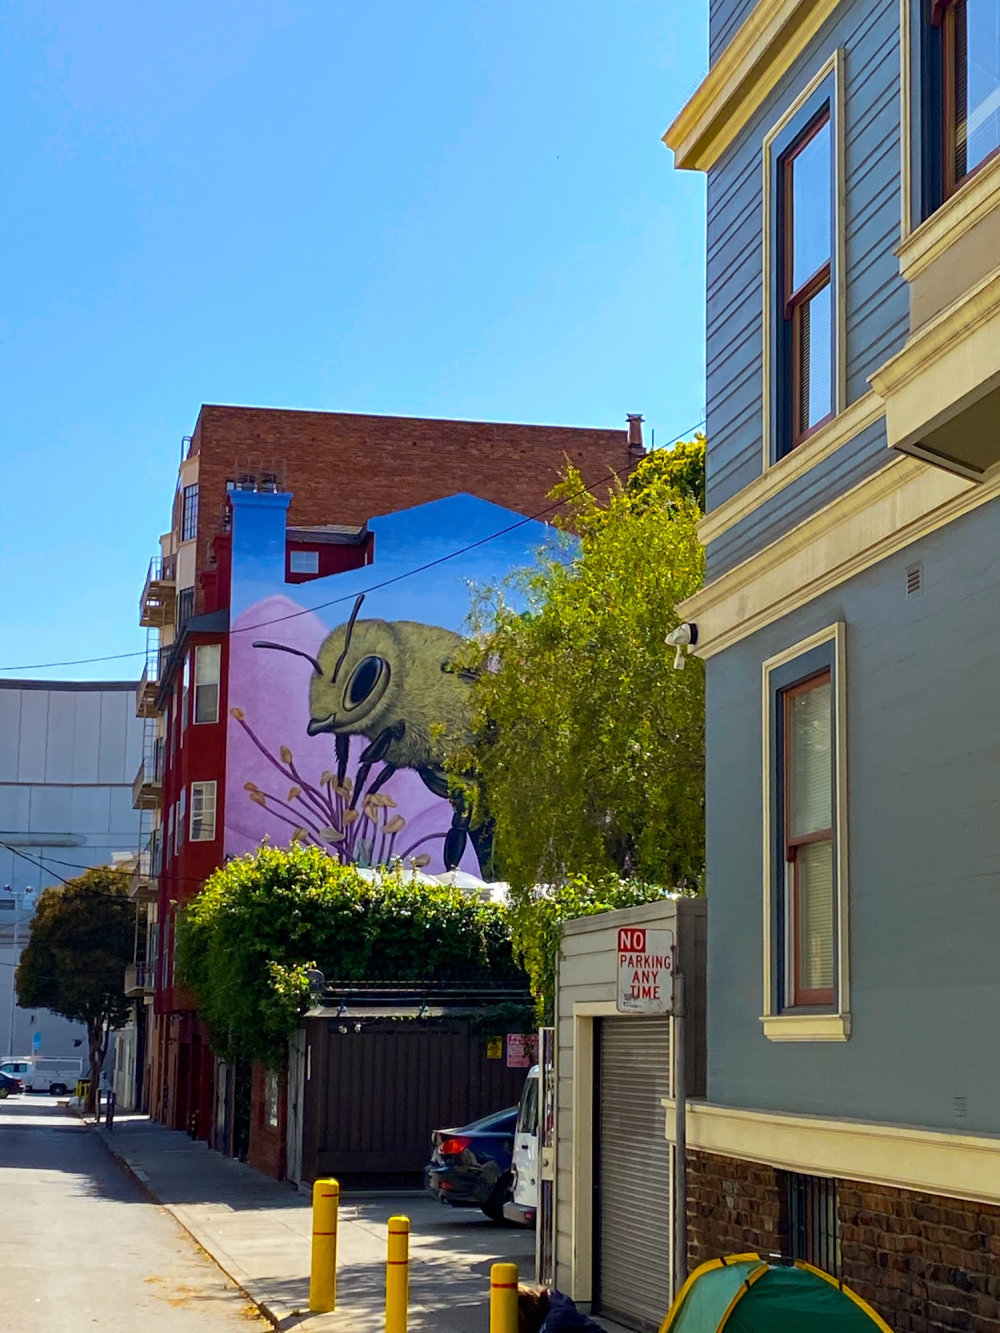 mural in San Francisco by artist Shawn Bullen.